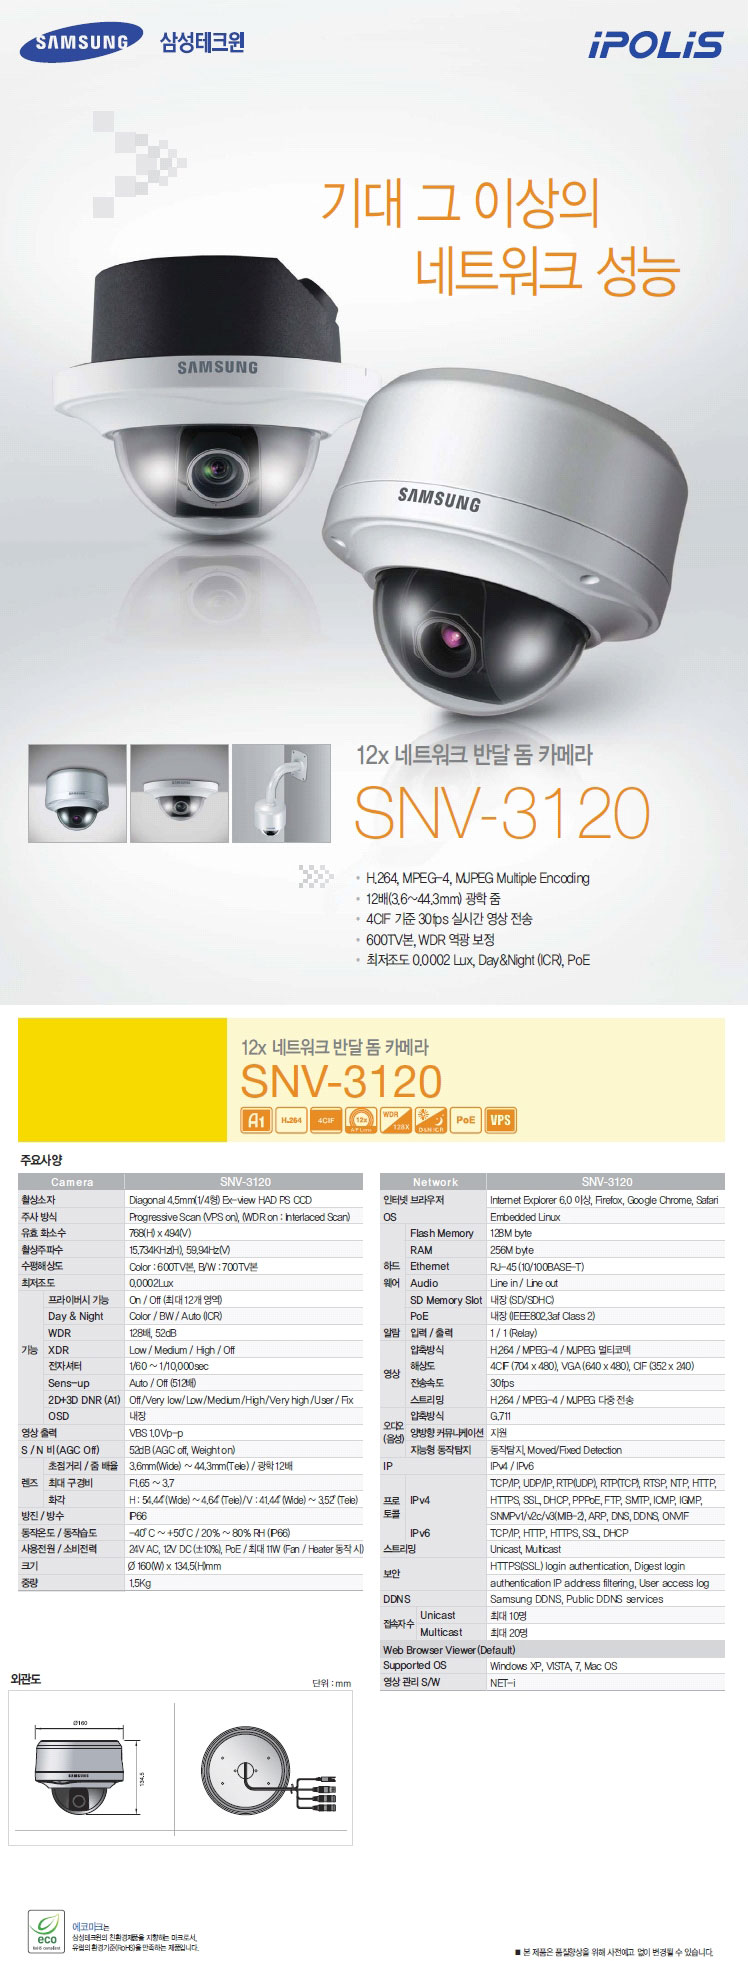 SNV-3120